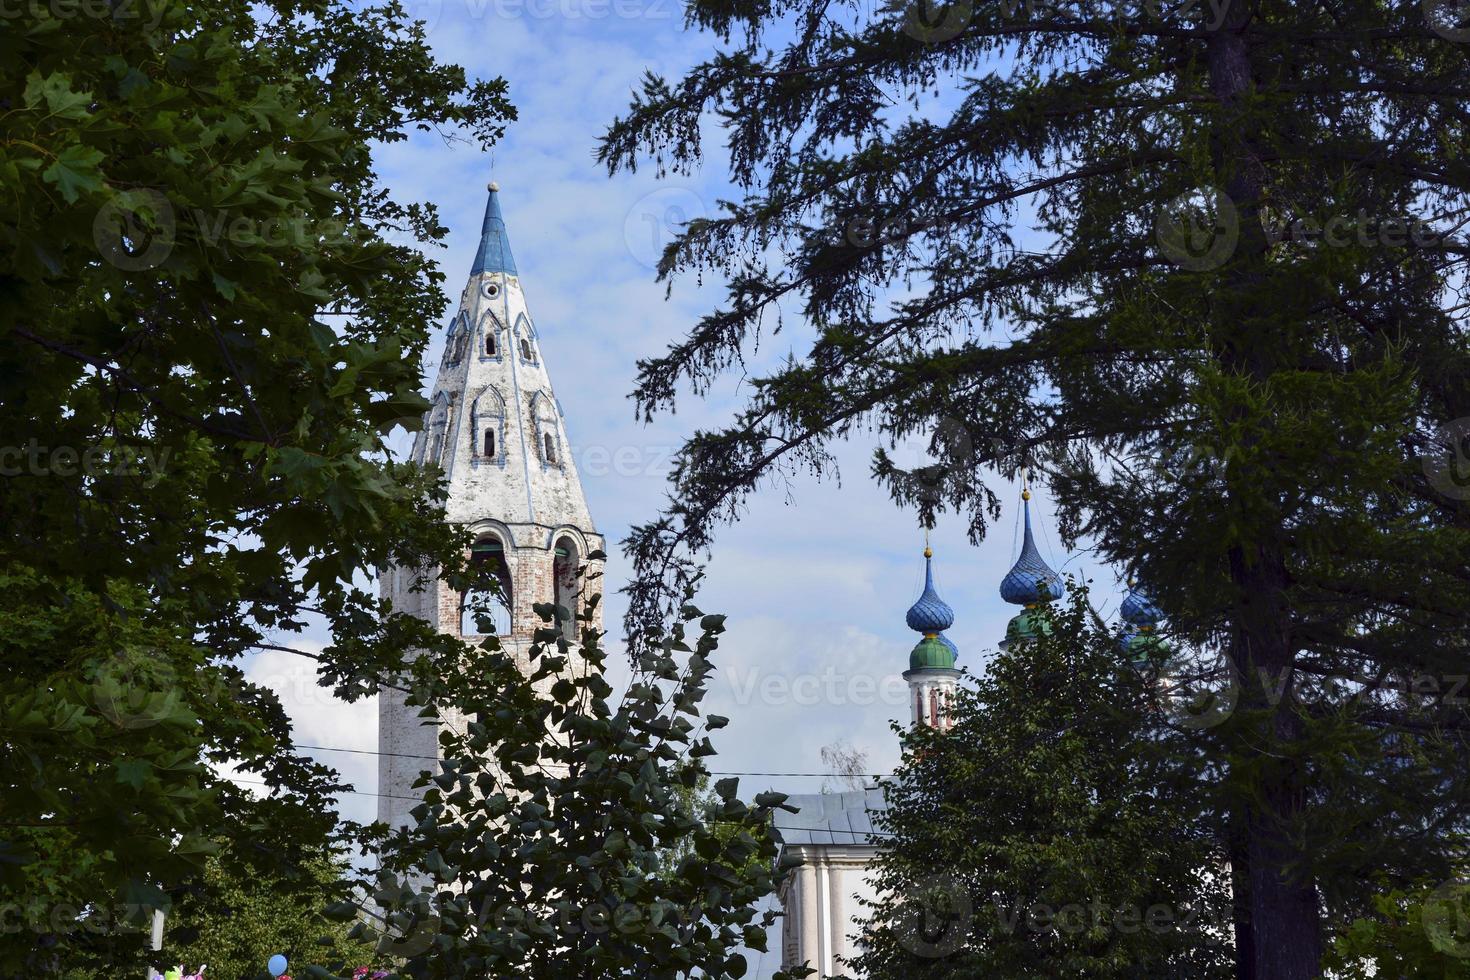 cúpulas de la iglesia con cruces contra el cielo azul. templo de piedra blanca entre los árboles del pueblo. foto